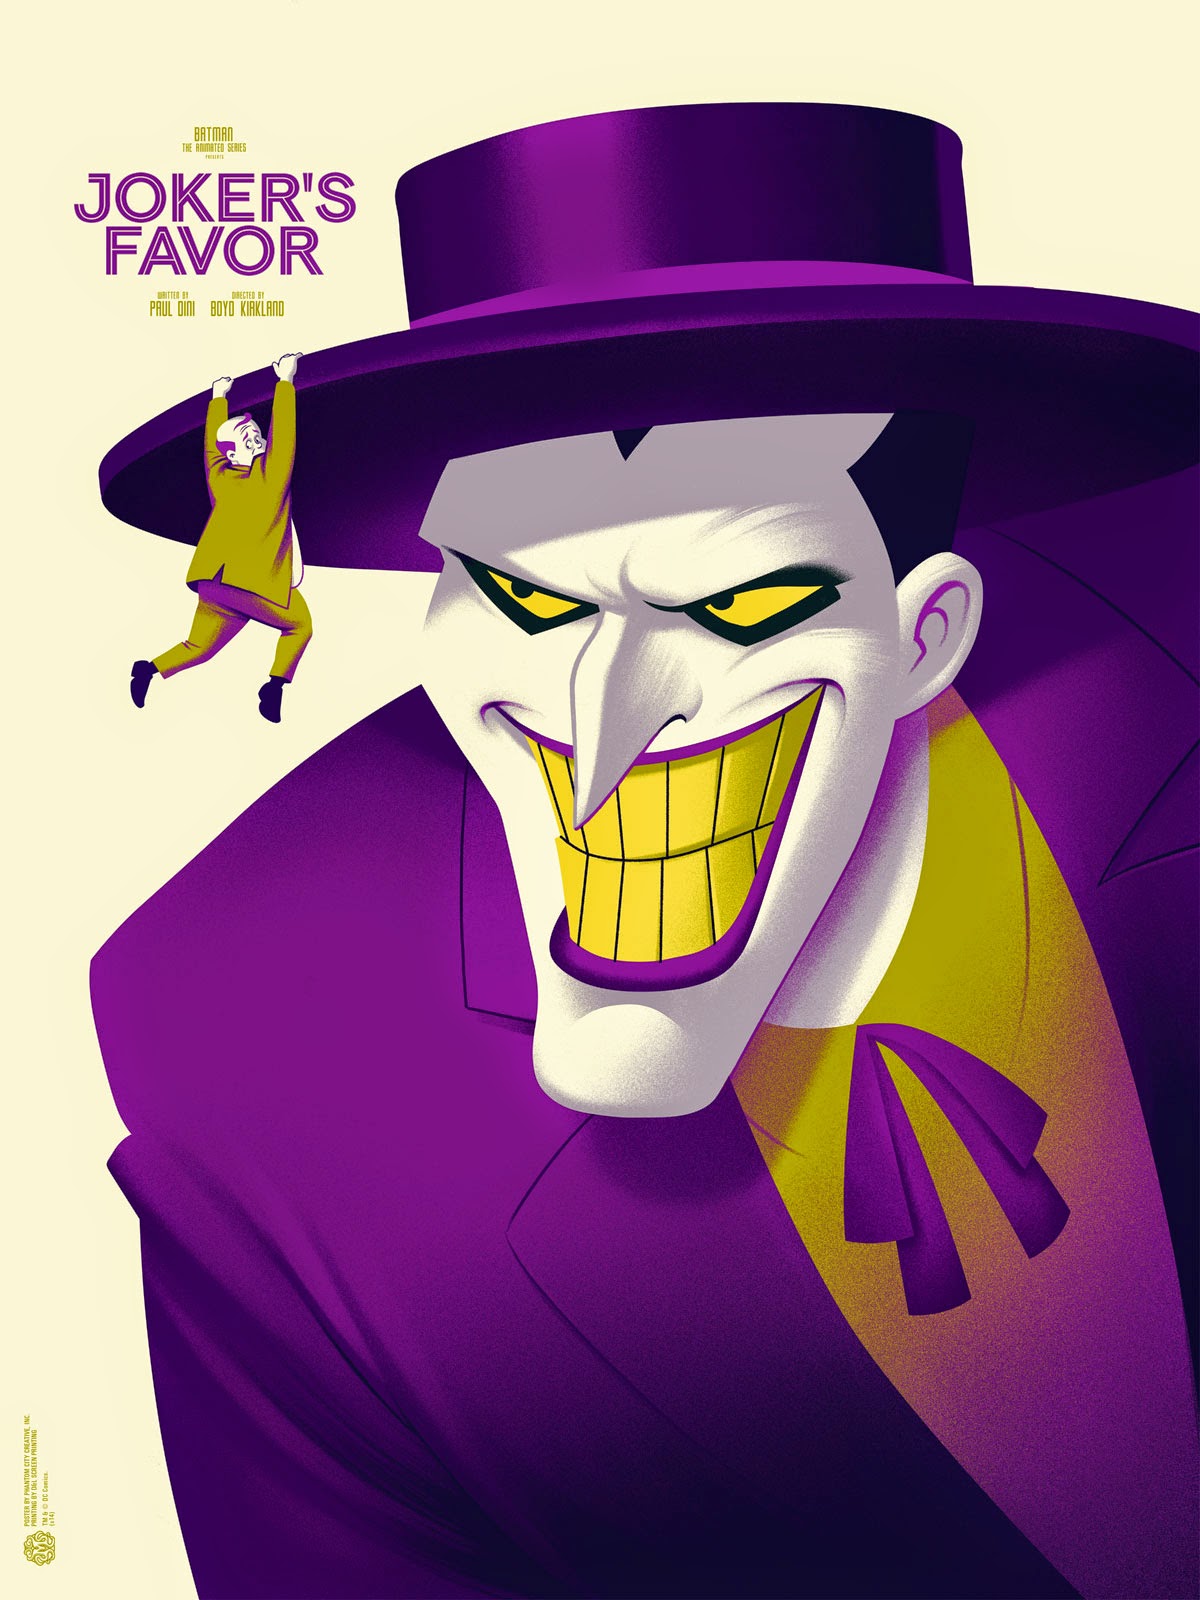 INSIDE THE ROCK POSTER FRAME BLOG: Phantom City Creative Jokers Favor ...